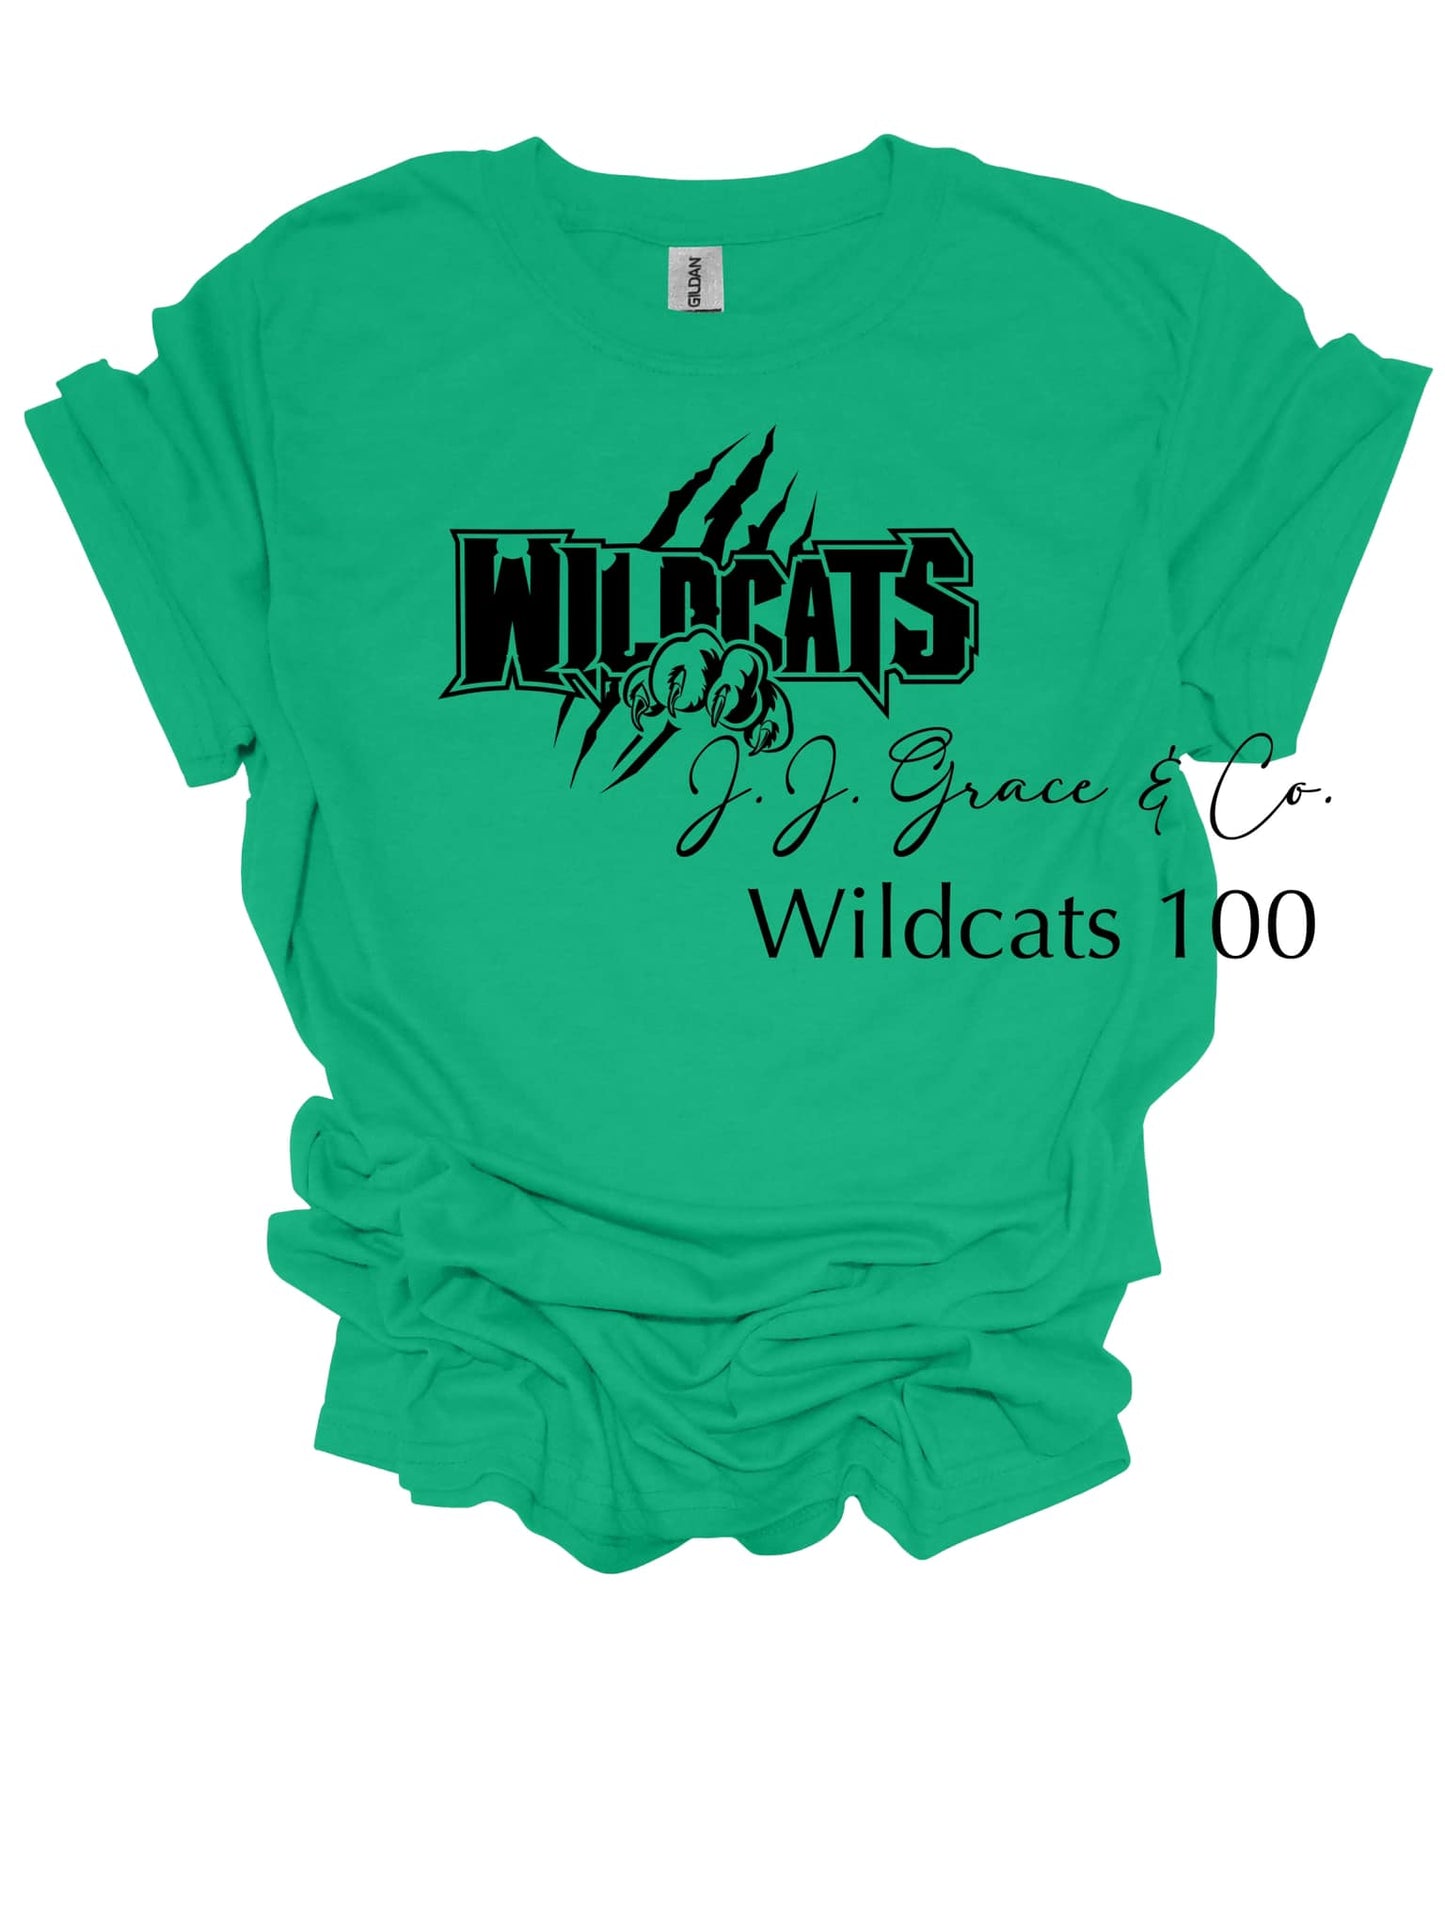 Wildcats 100